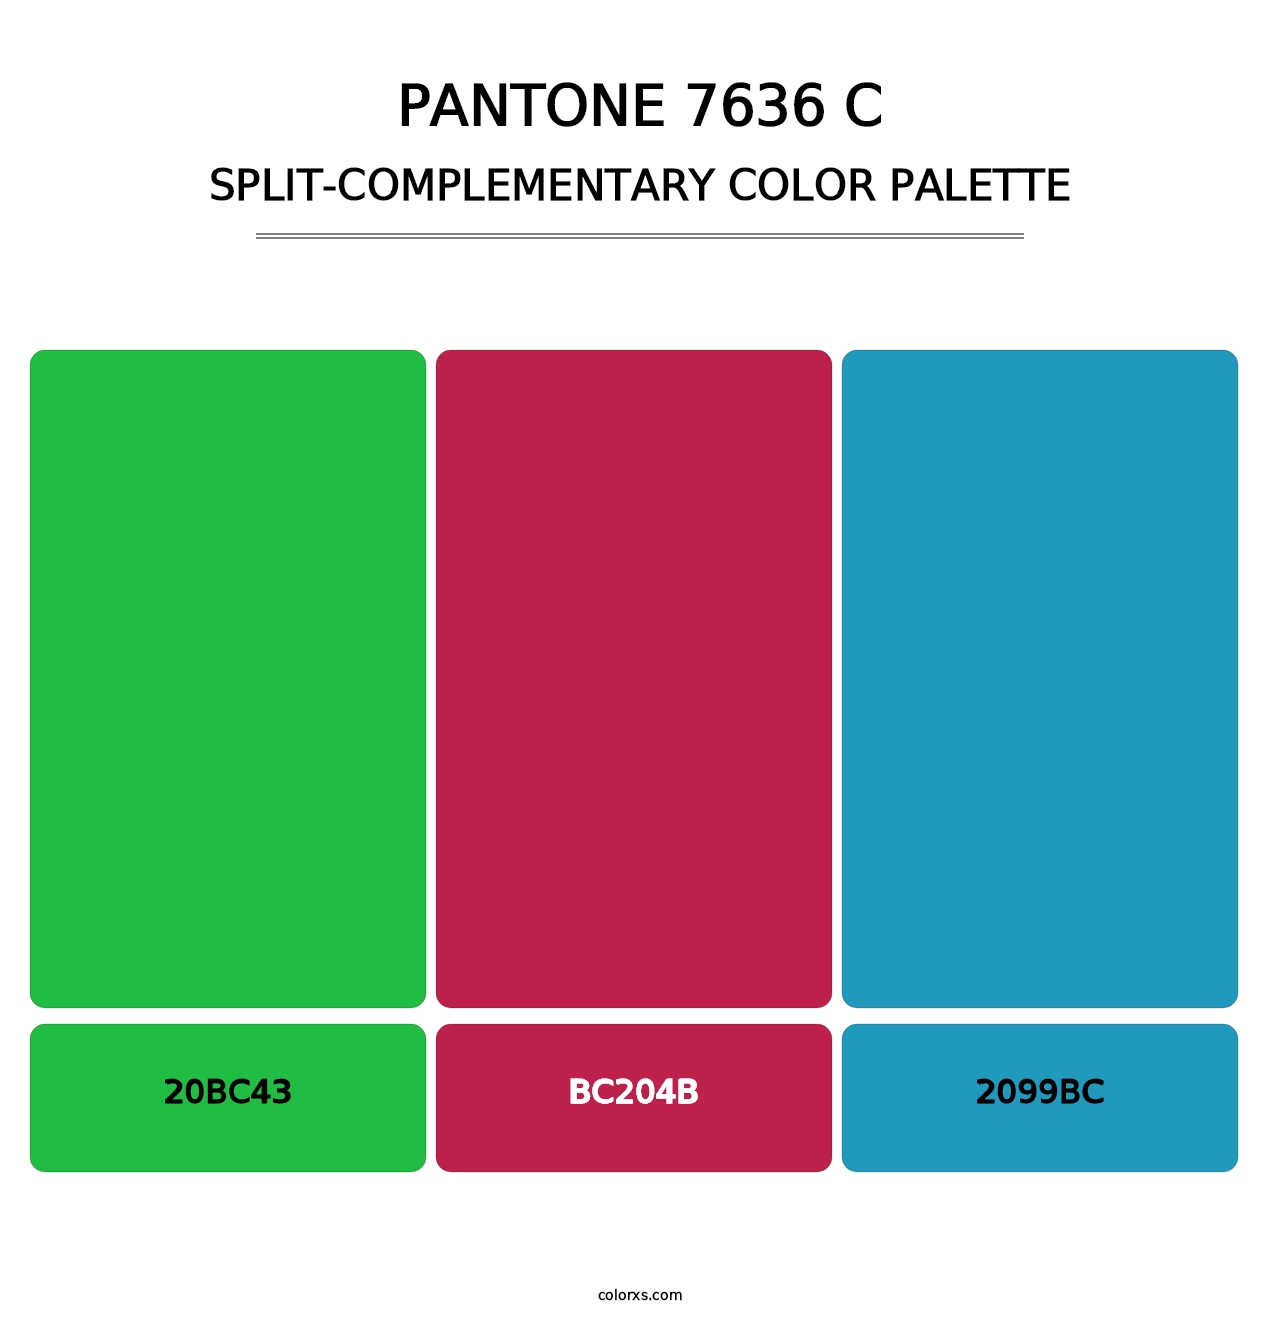 PANTONE 7636 C - Split-Complementary Color Palette